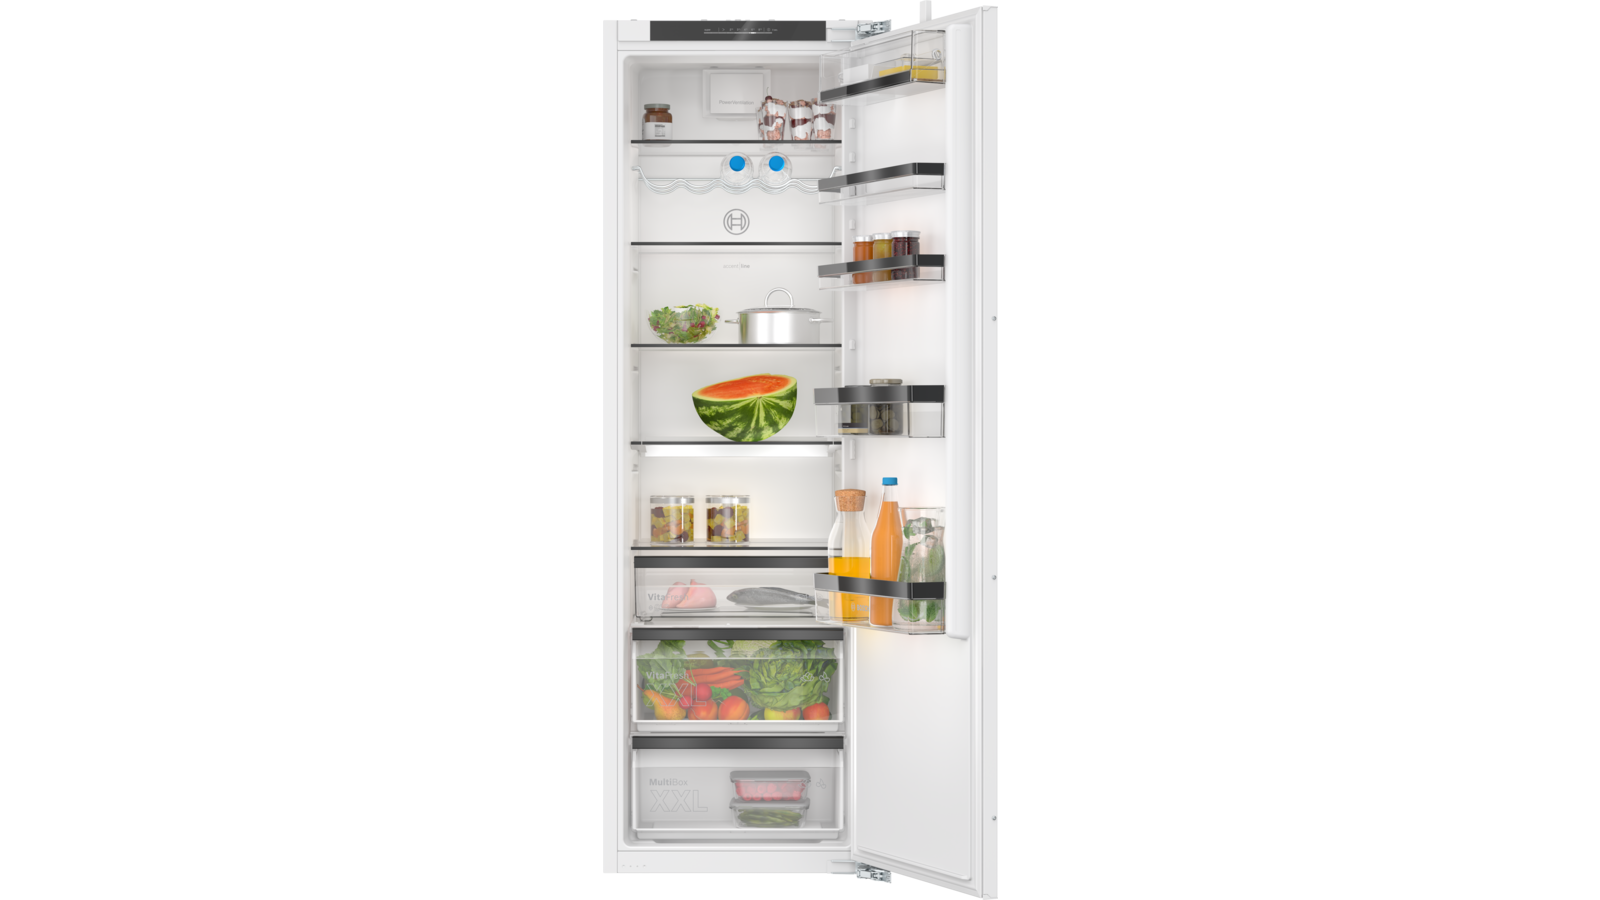 Réfrigérateur avec compartiment congélateur, domestique, 228